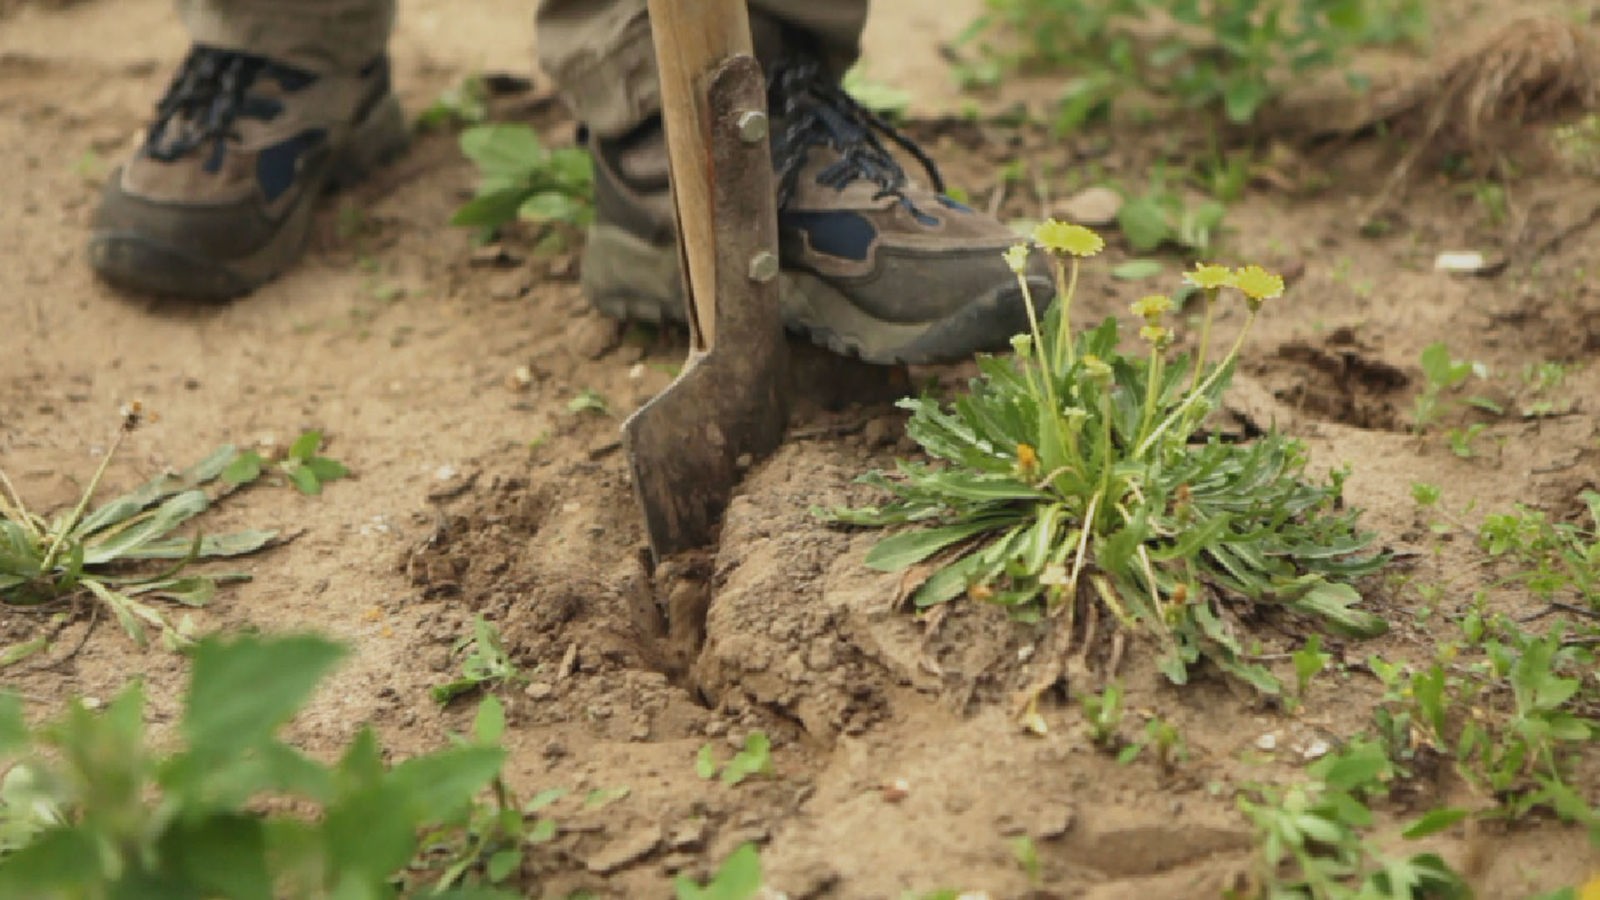 Zwei Füße in Arbeitsschuhen auf einem Feld. Einer sticht eine Schaufel in die Erde unter einer Löwenzahnpflanze mit mehreren gelben Blüten.